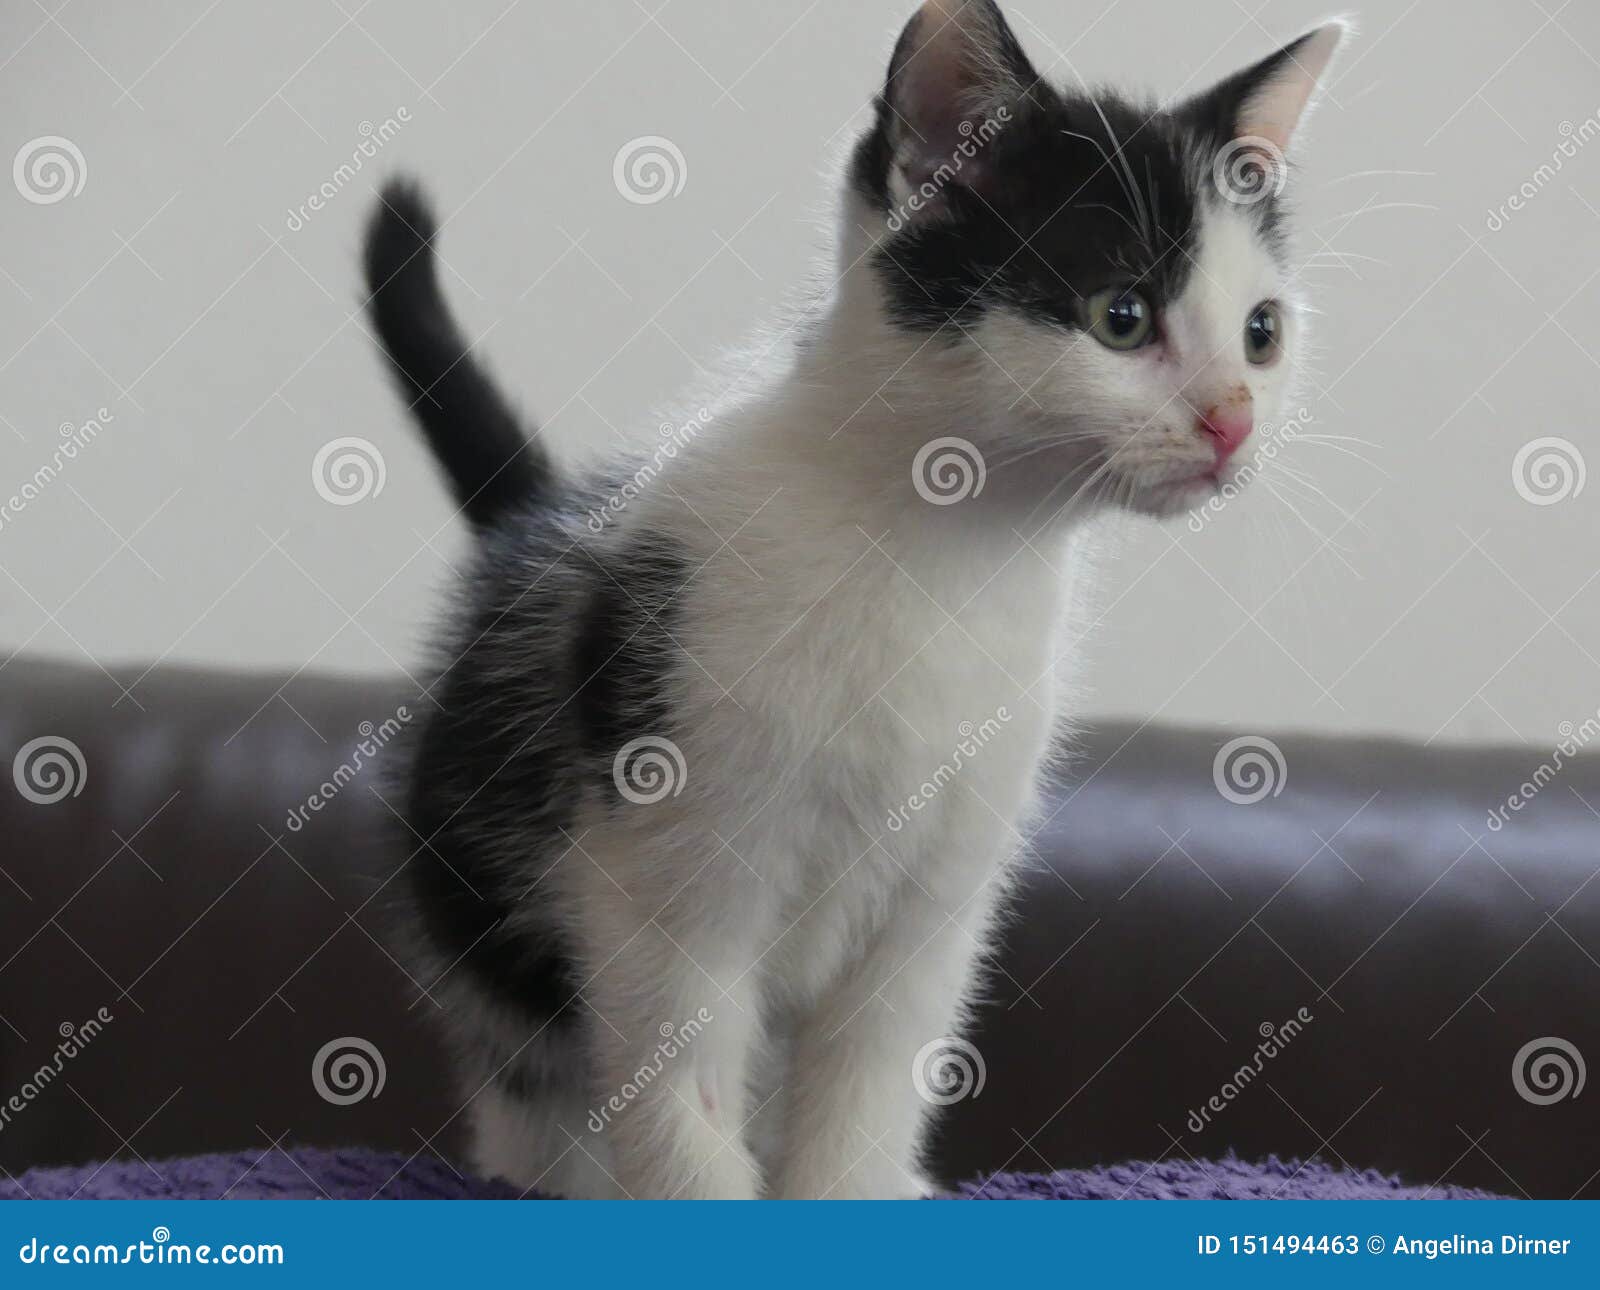 European Shorthair Cat Kitten Black And White Stock Image Image Of White Shorthair 151494463